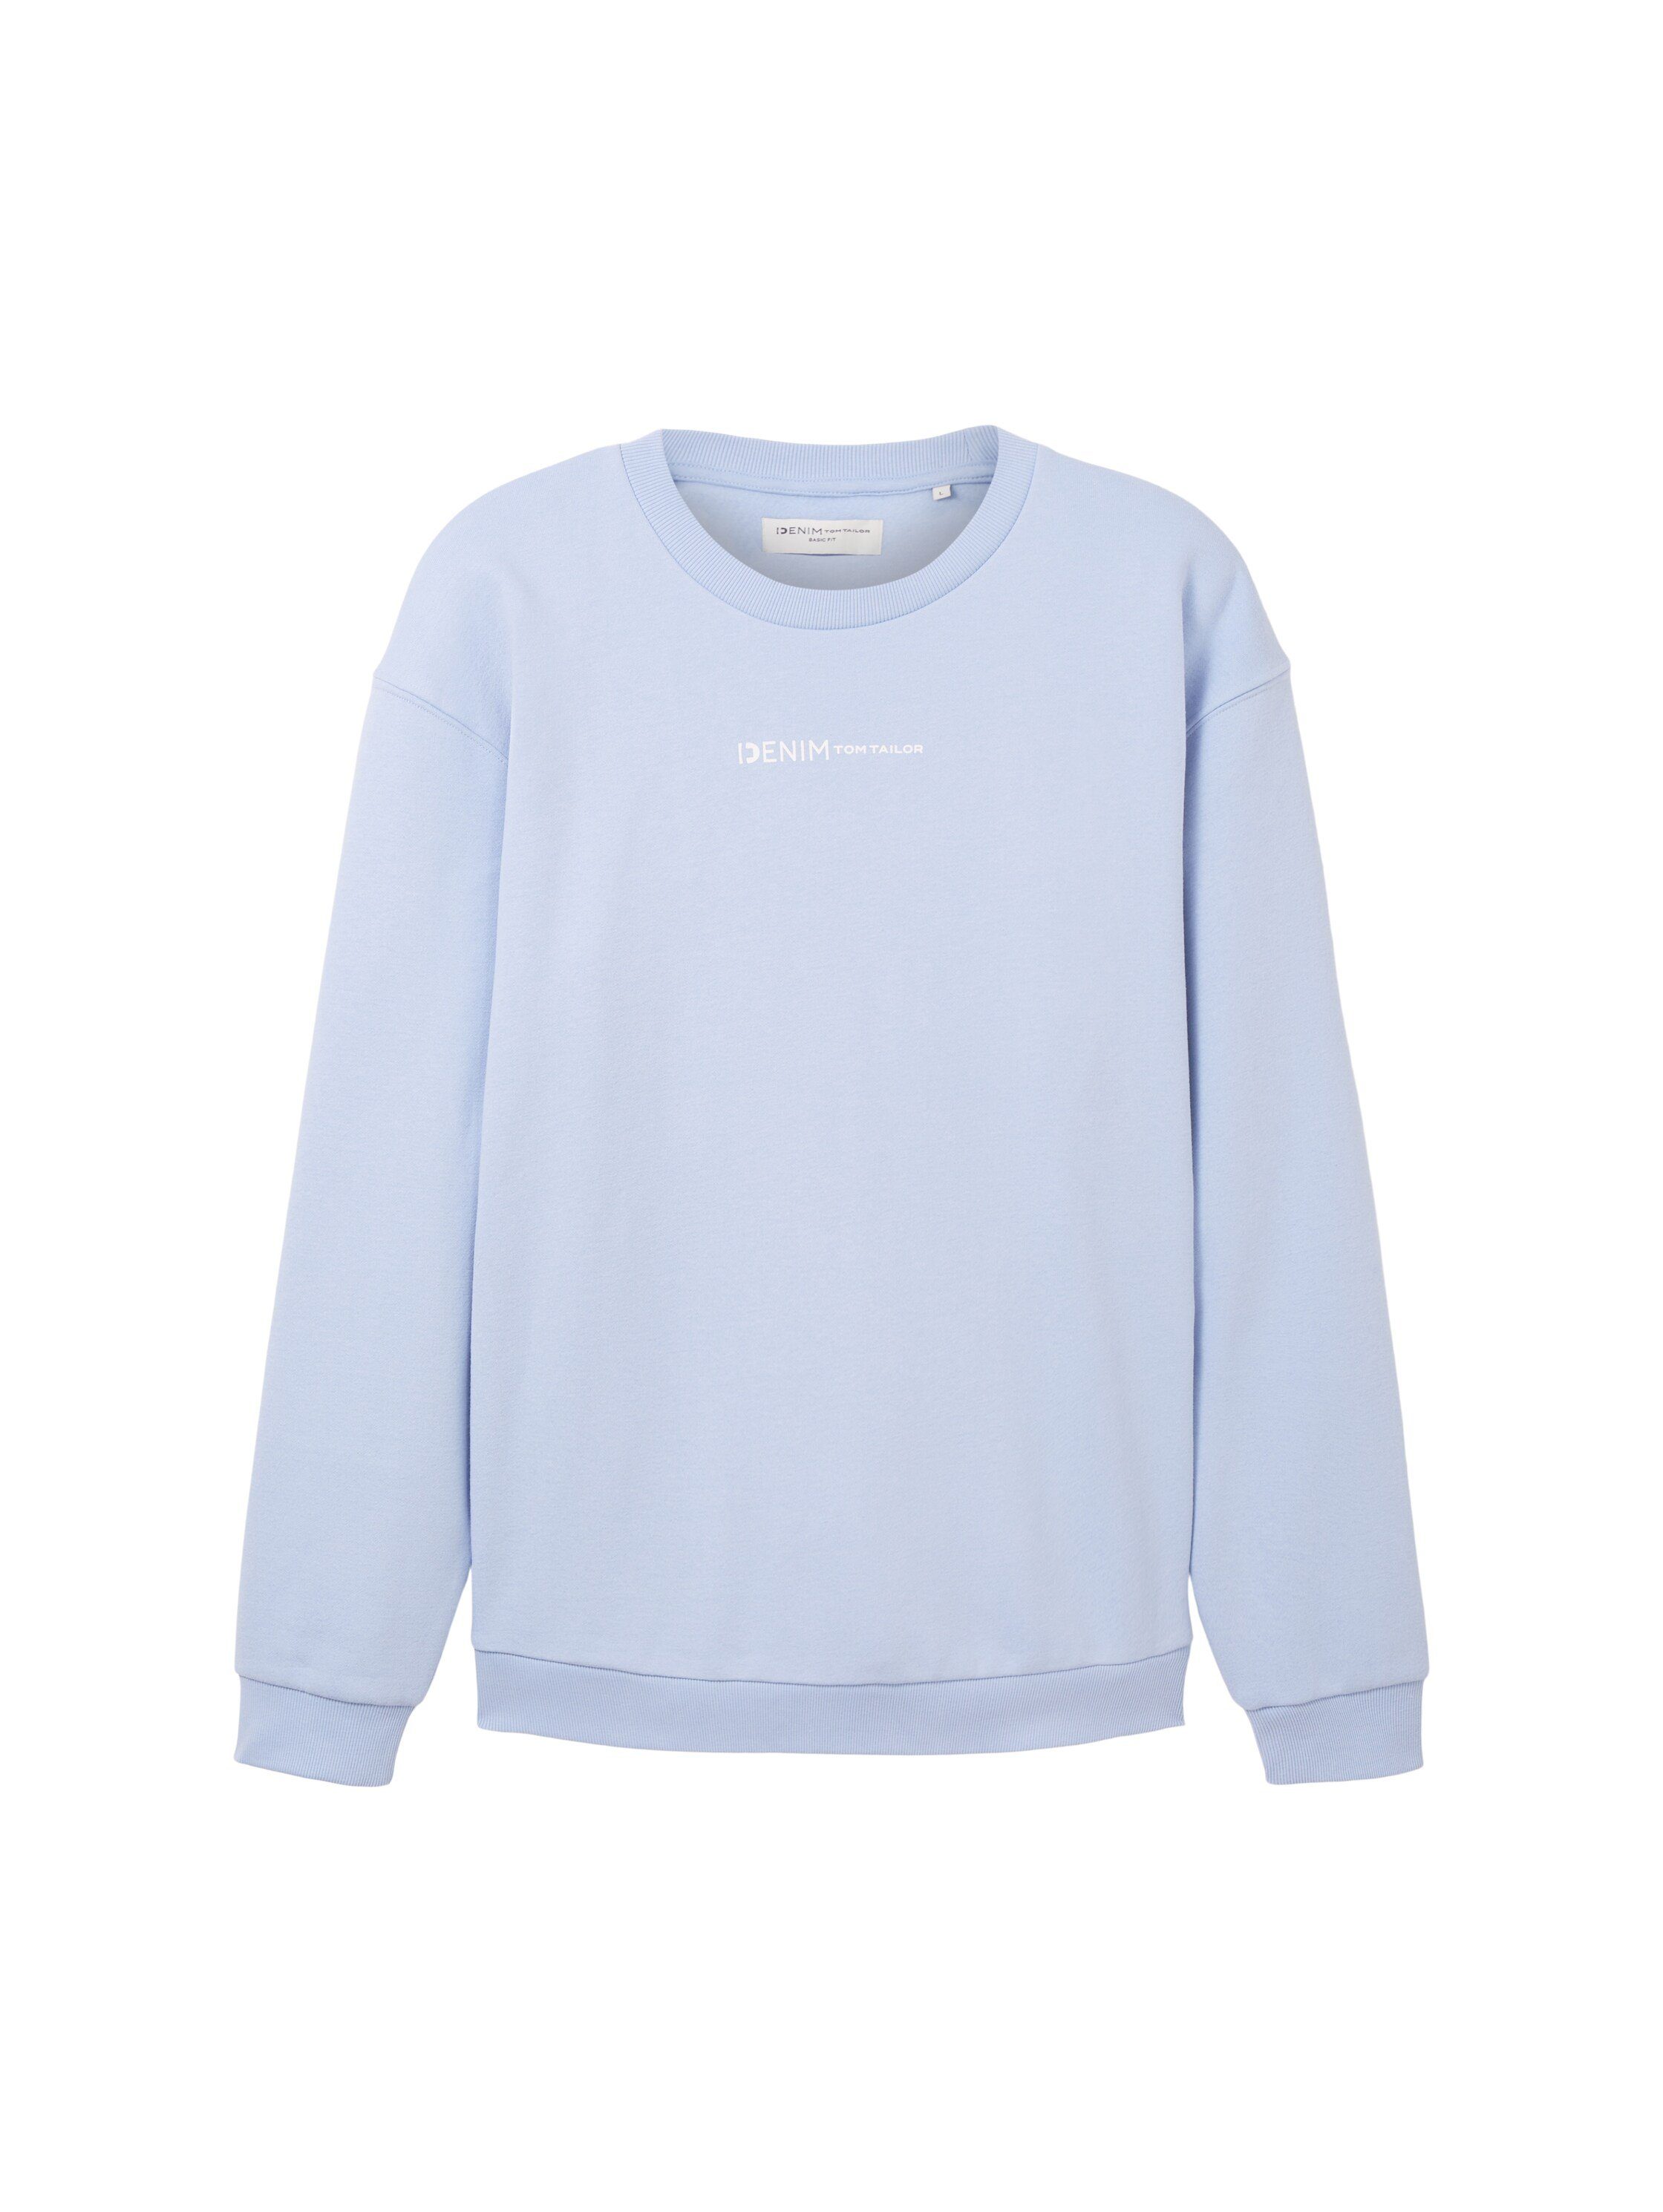 mit Logofrontprint blue tinted Sweatshirt TAILOR Denim TOM